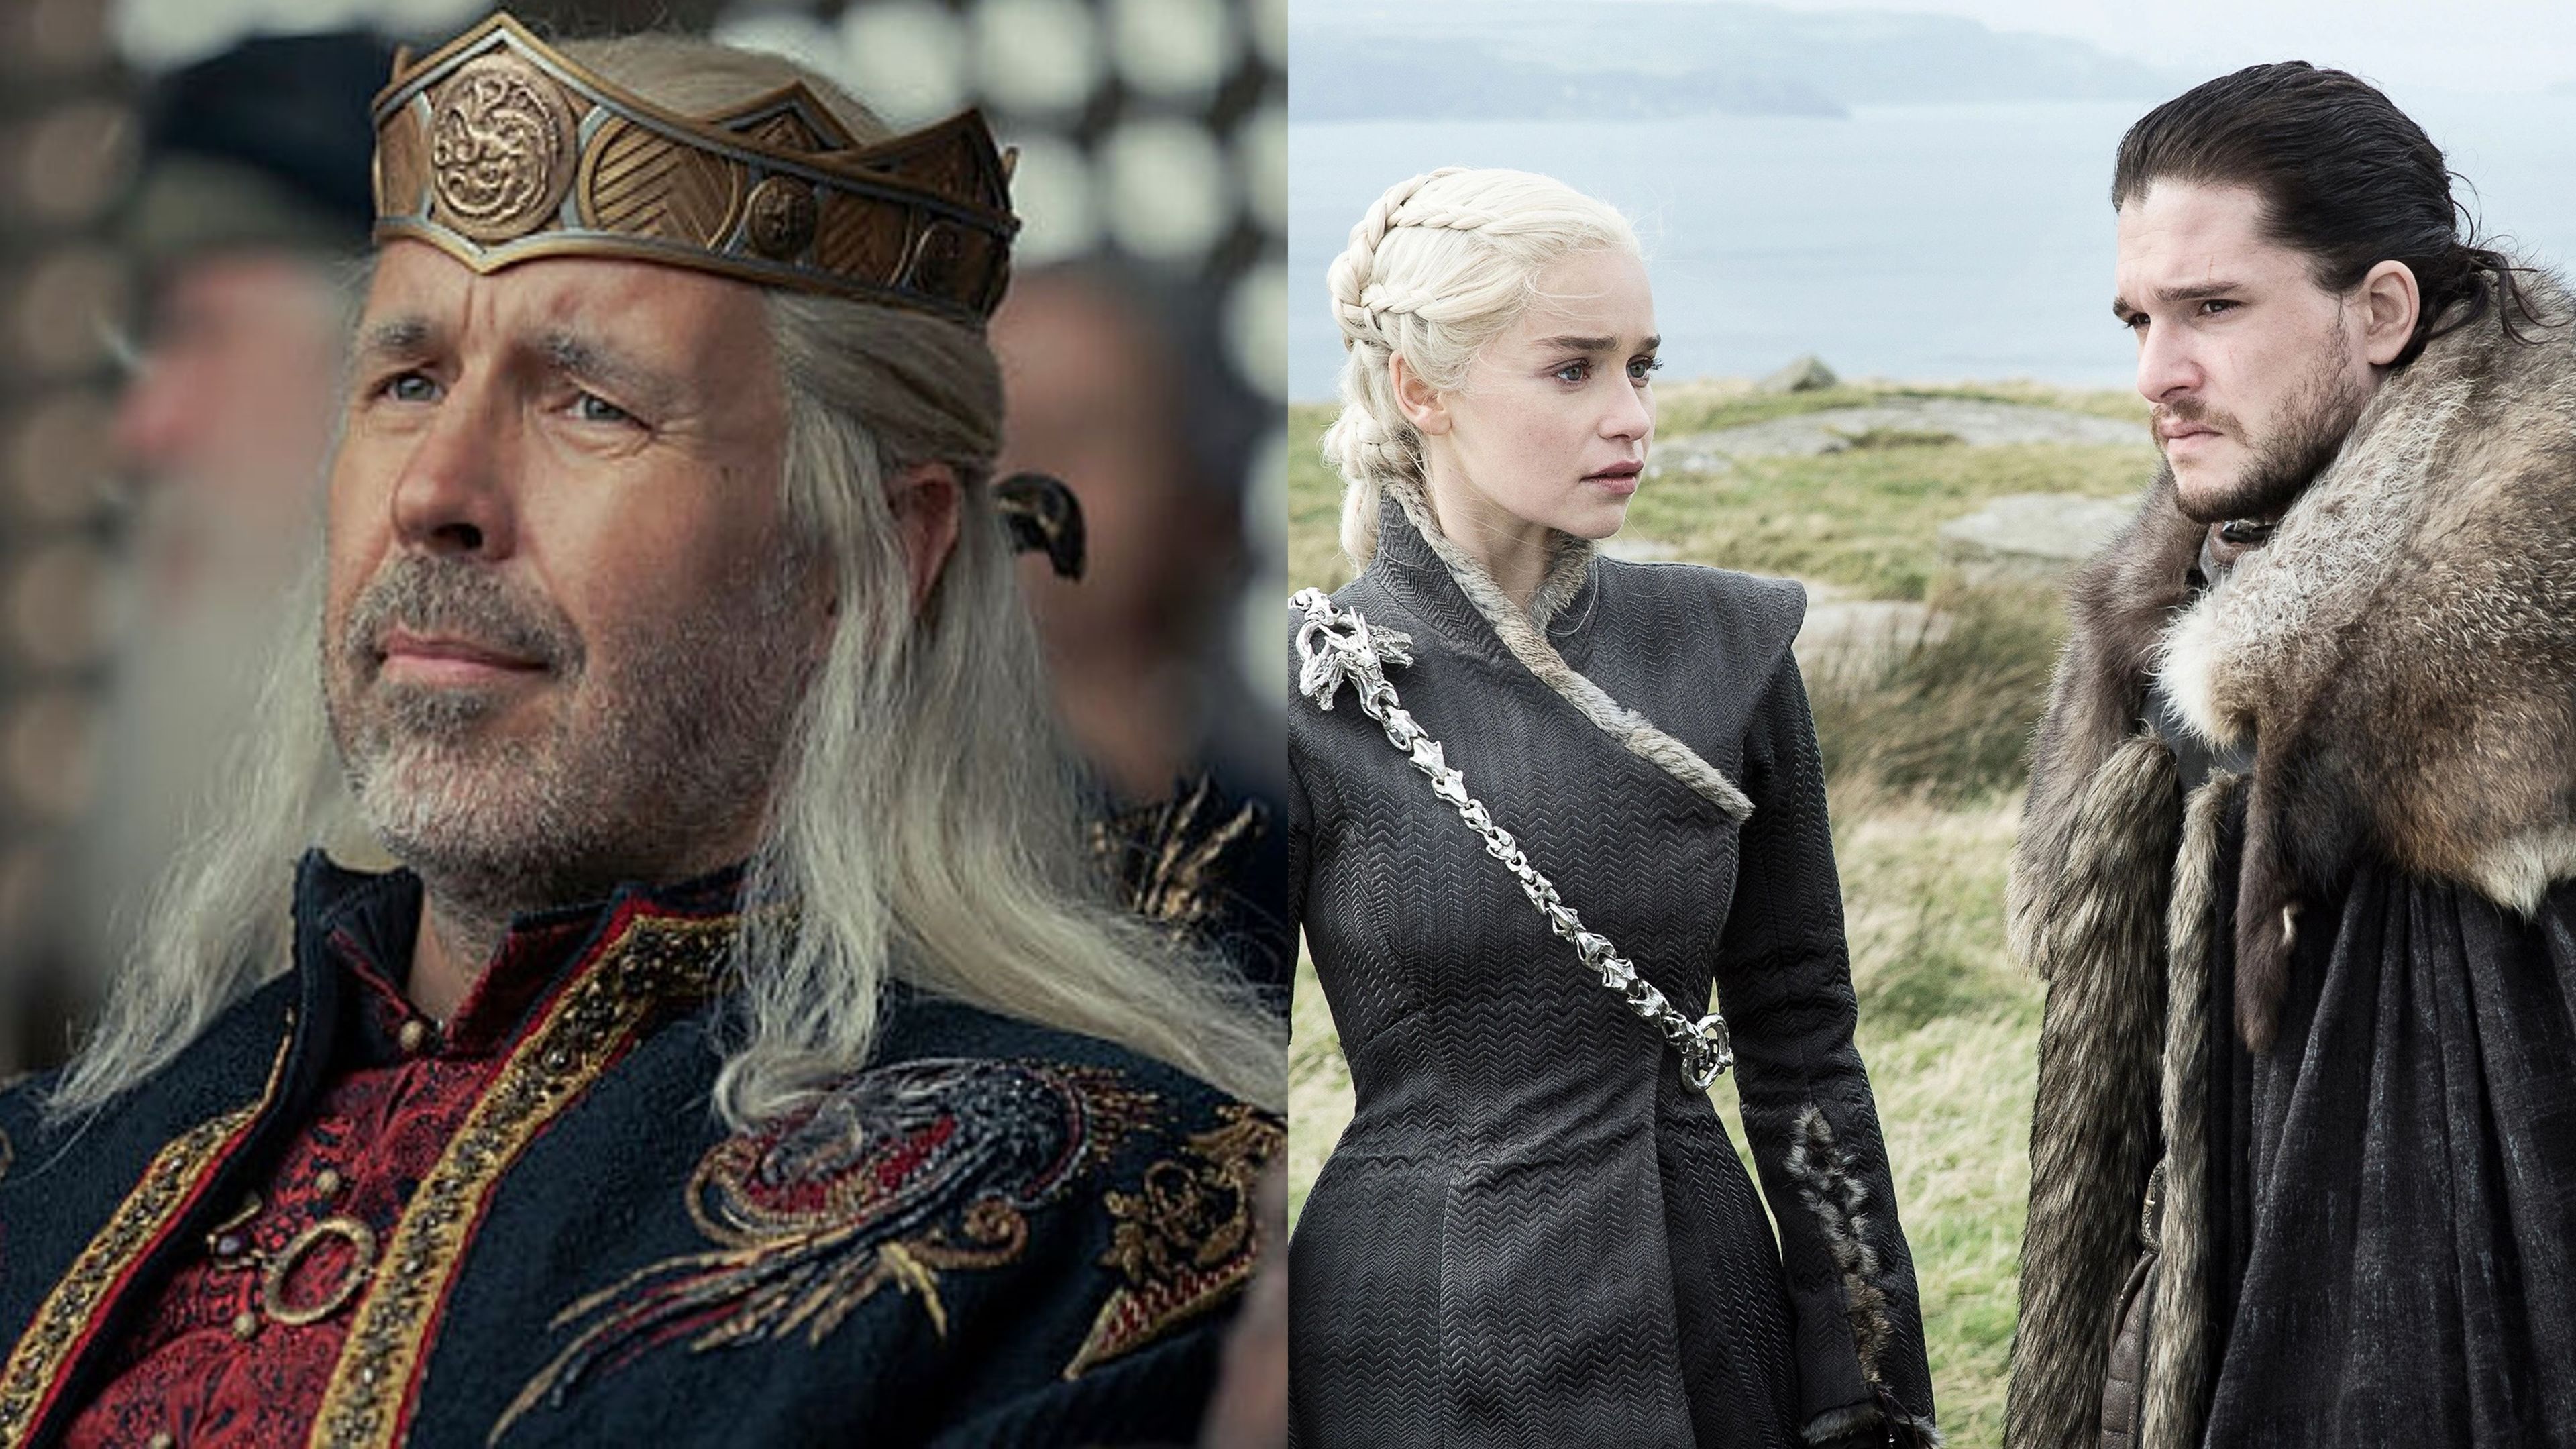 Las palabras del rey Viserys en La casa del dragón y su conexión con Daenerys Targaryen y Jon Nieve